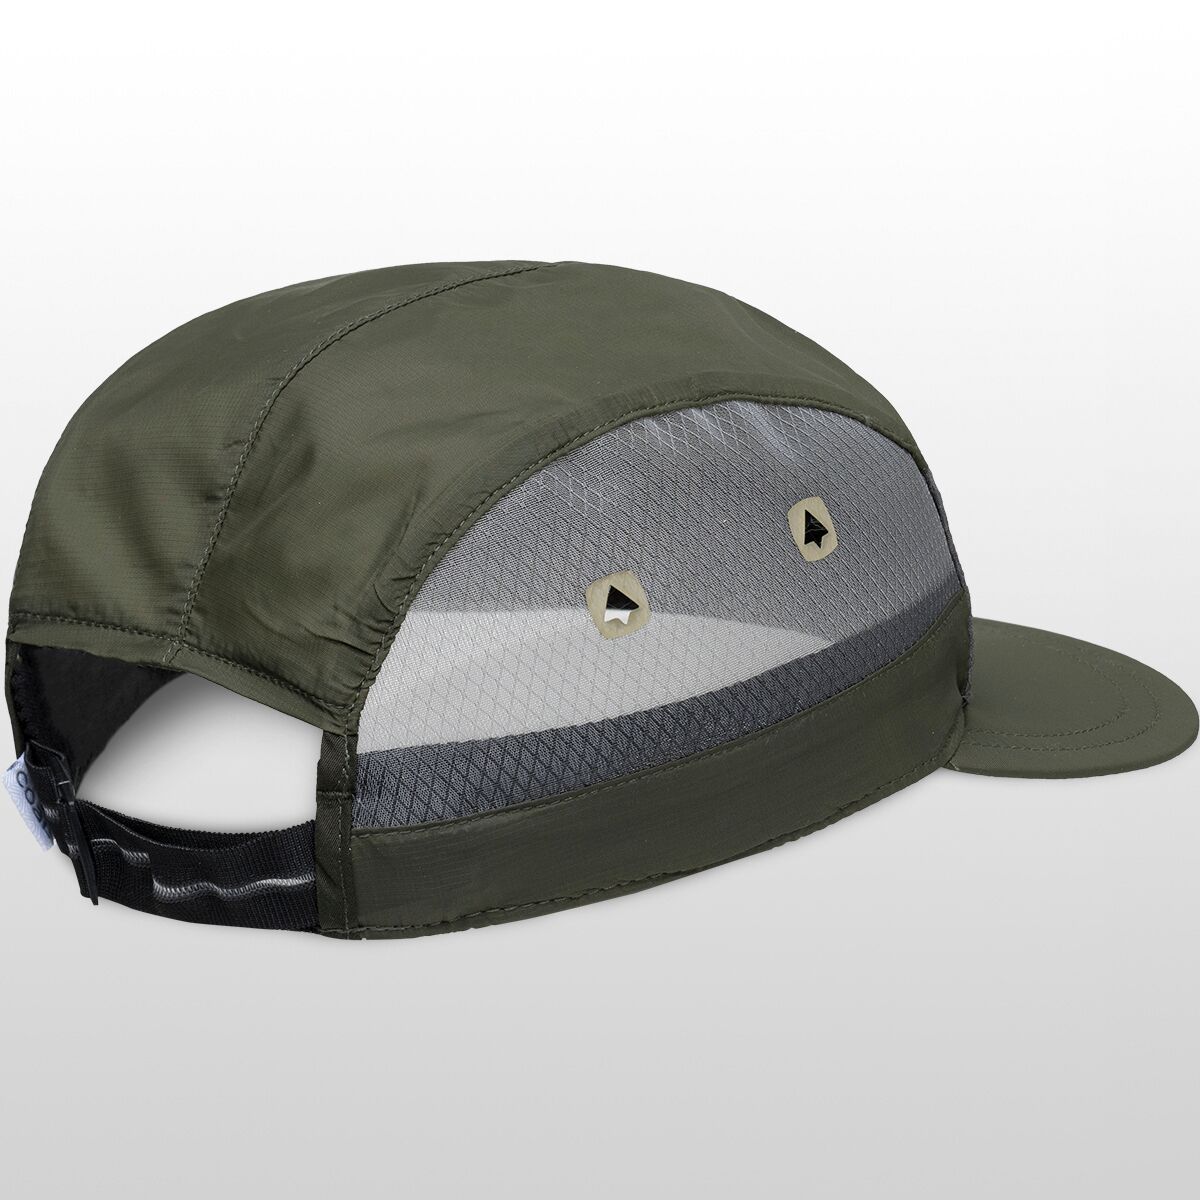 Coal Headwear Apollo Hat - Accessories